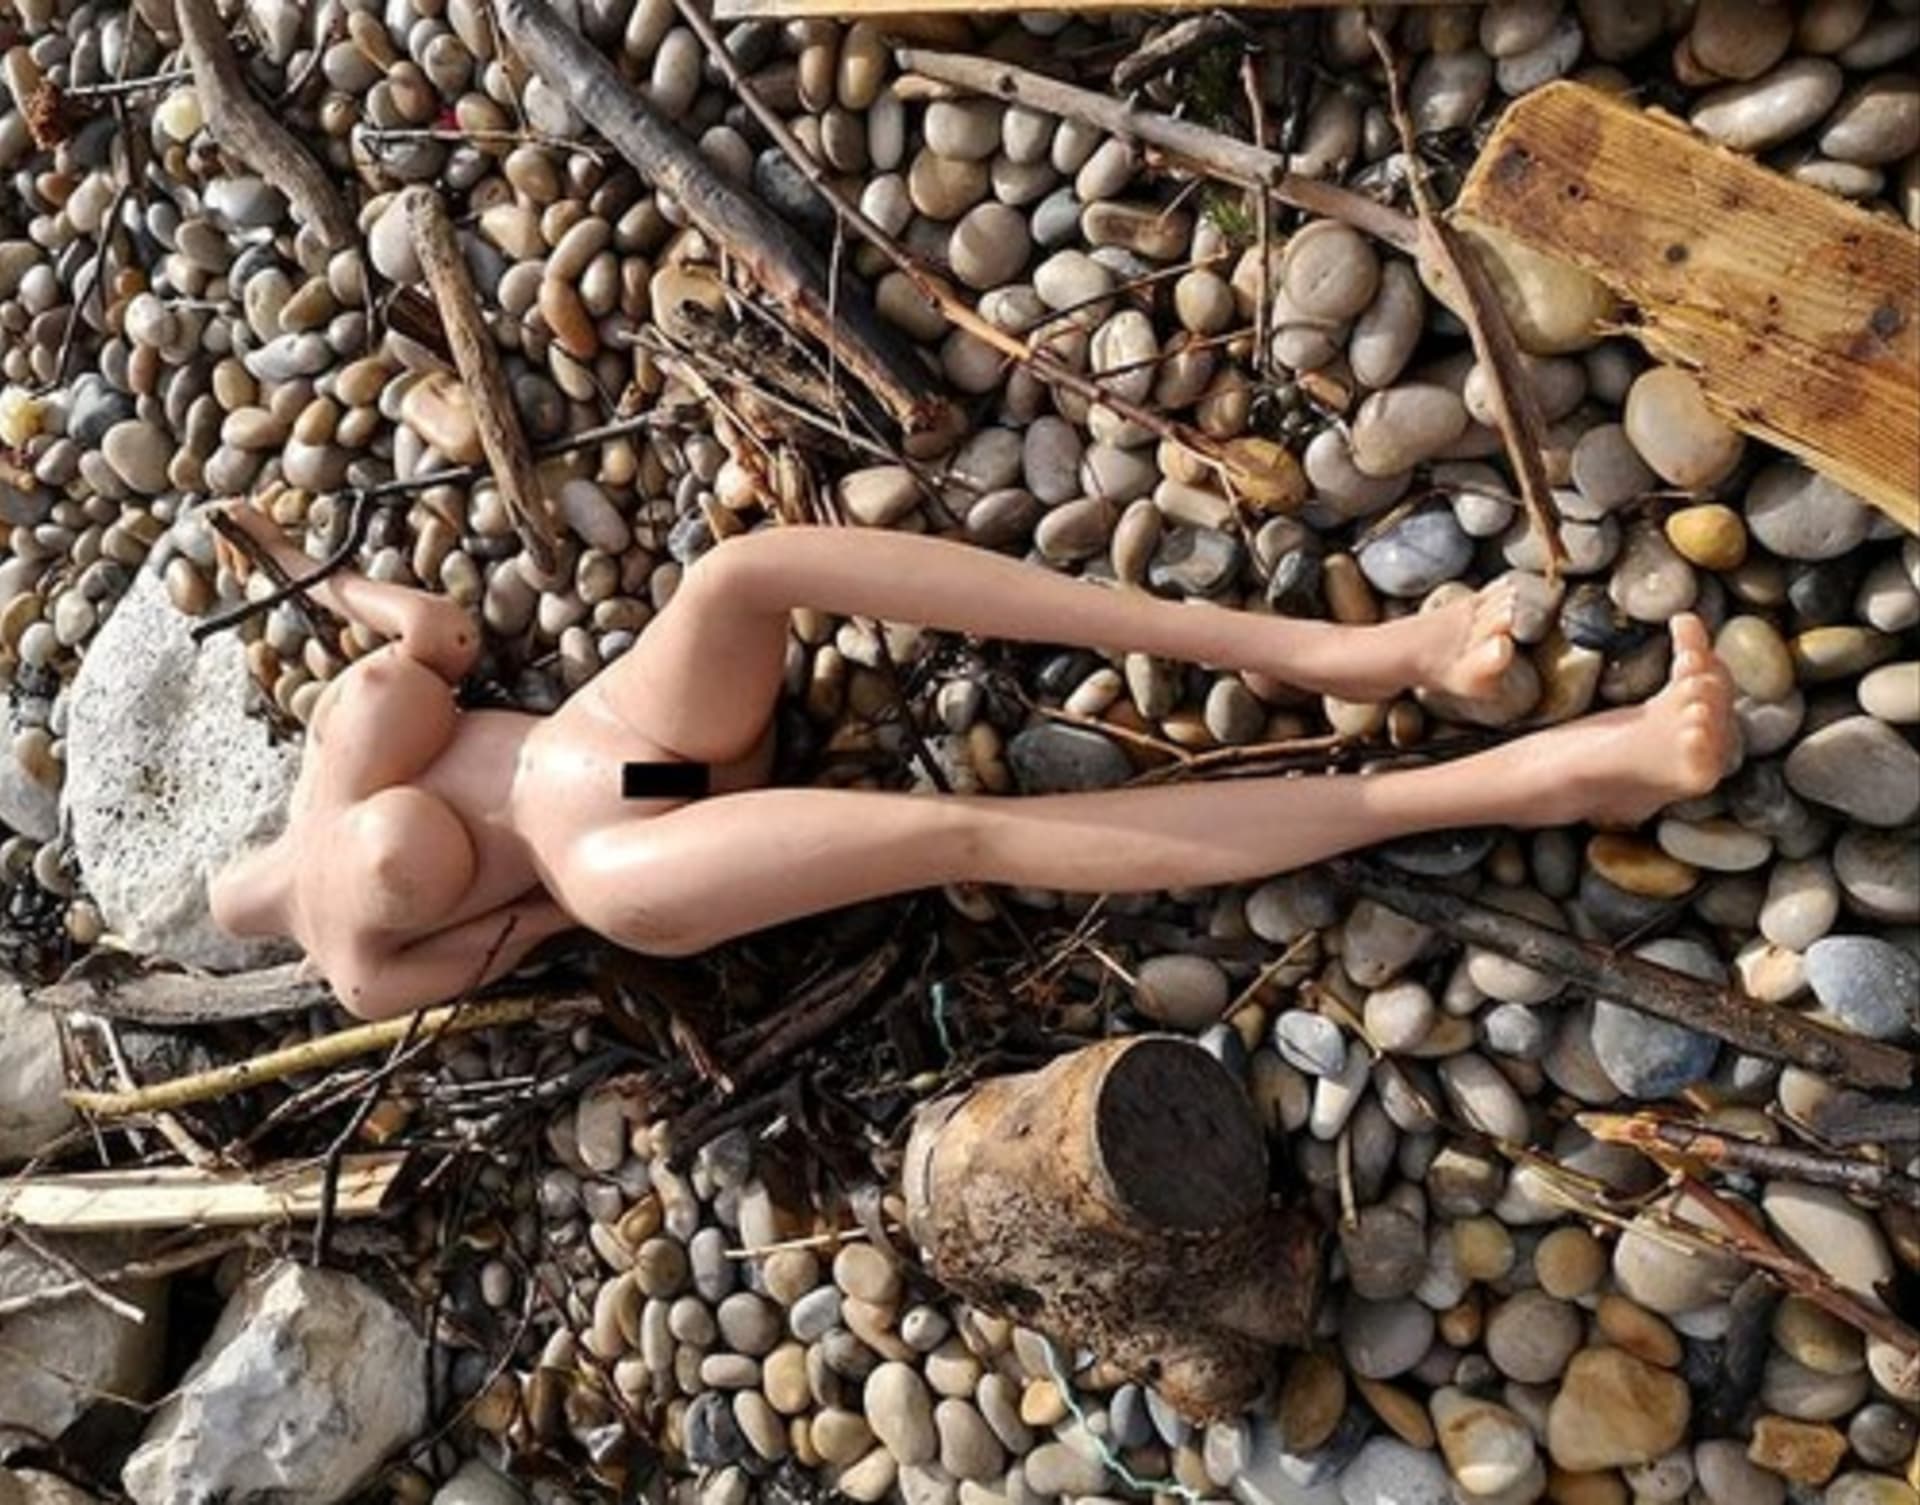 Silikonovou sexuální pannu objevil na pláži také Chris Ford z Anglie.